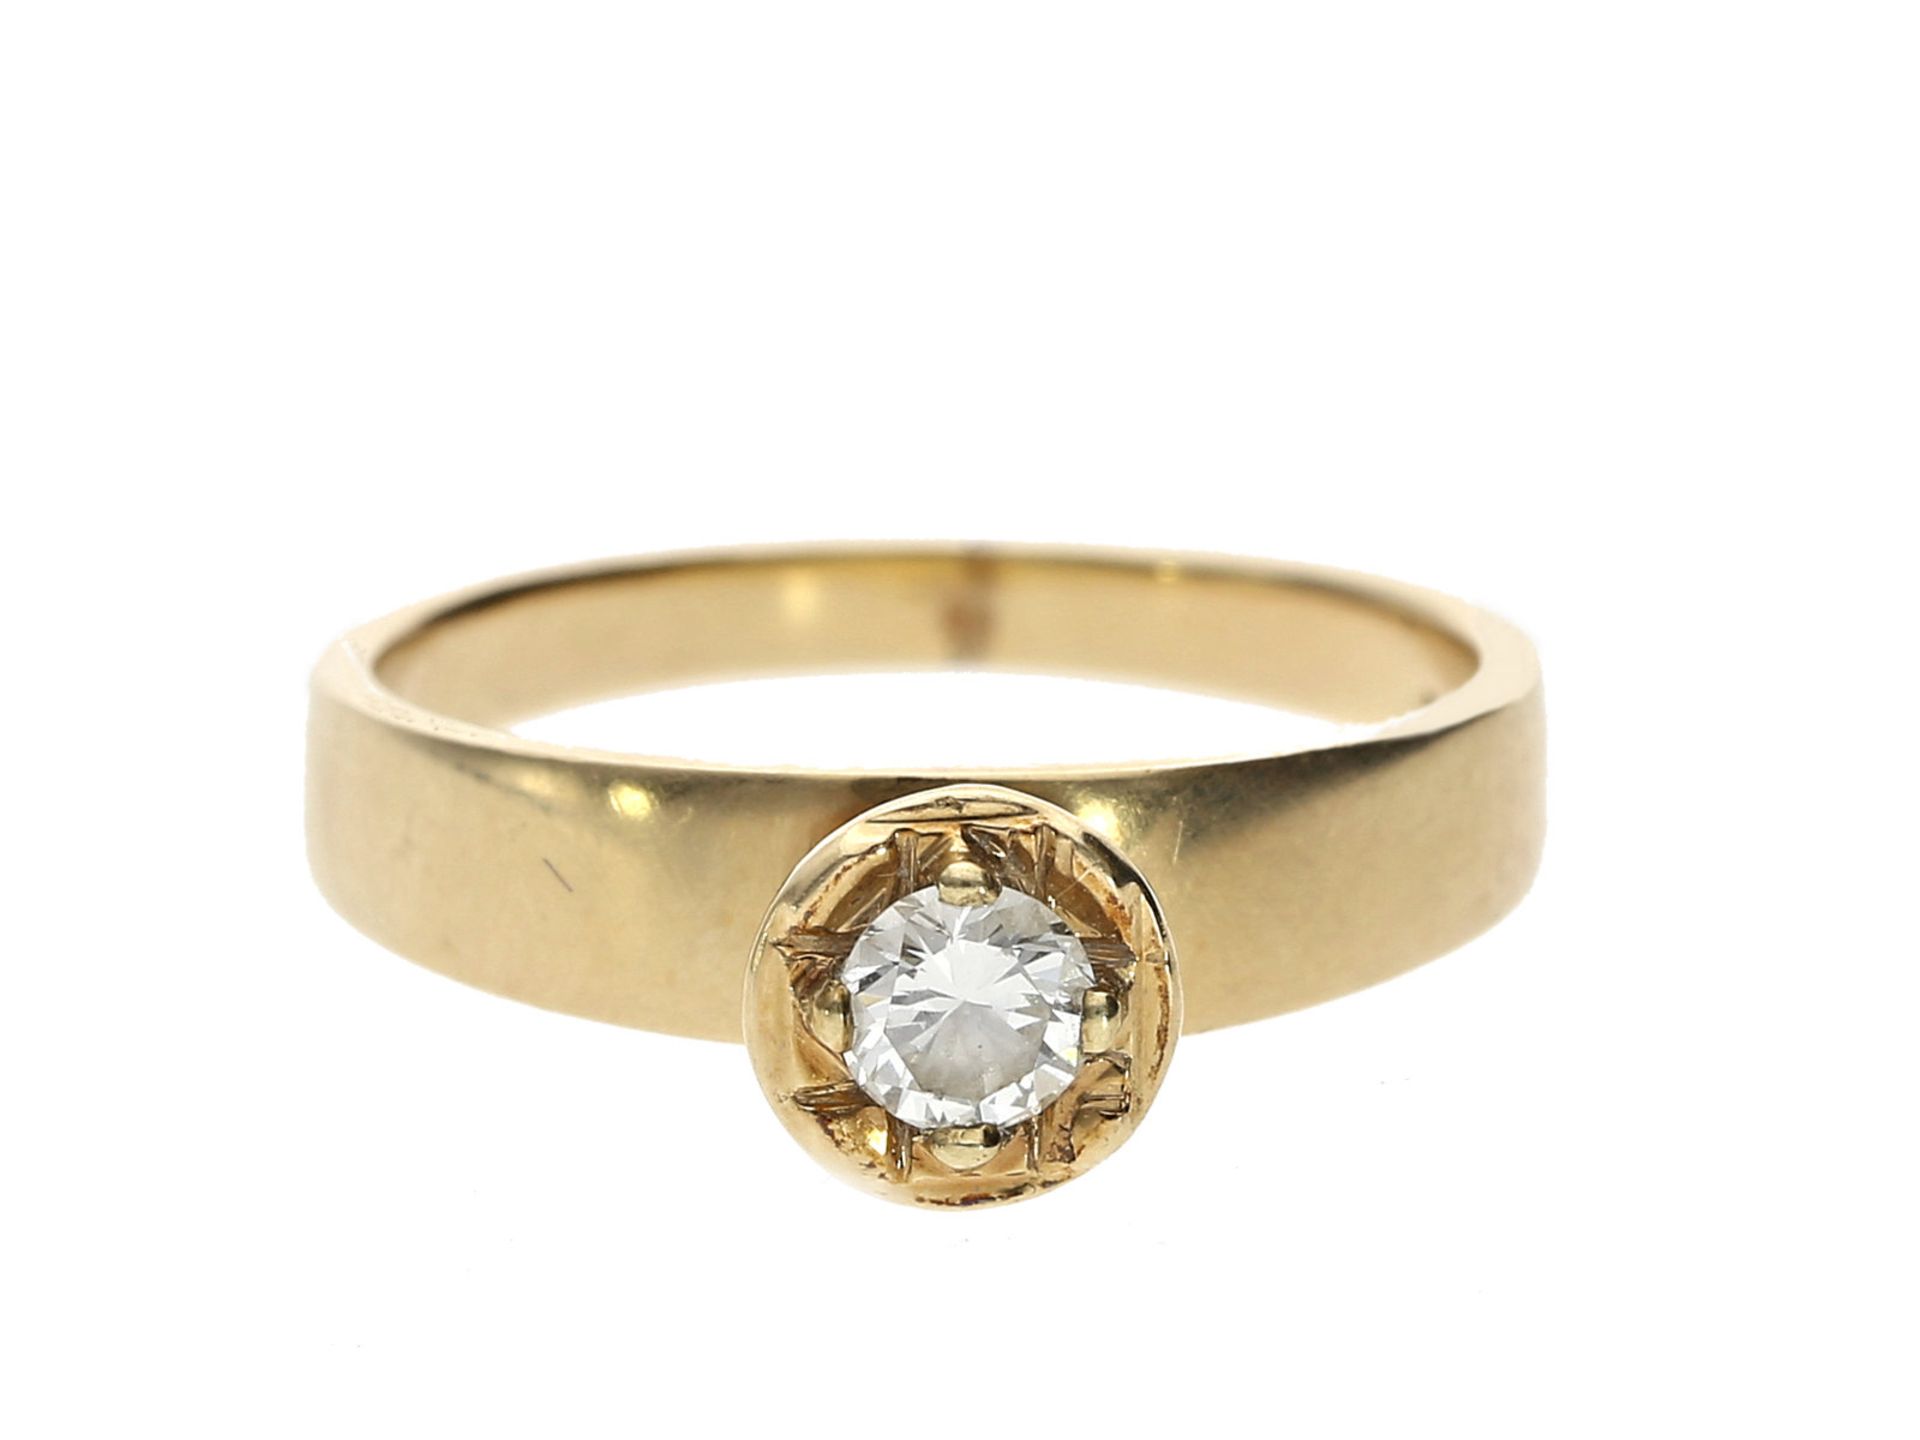 Ring: ausgefallener Goldschmiedering mit Brillant von ca. 0,2ctCa. Ø17mm, RG53, ca. 3,3g, 14K